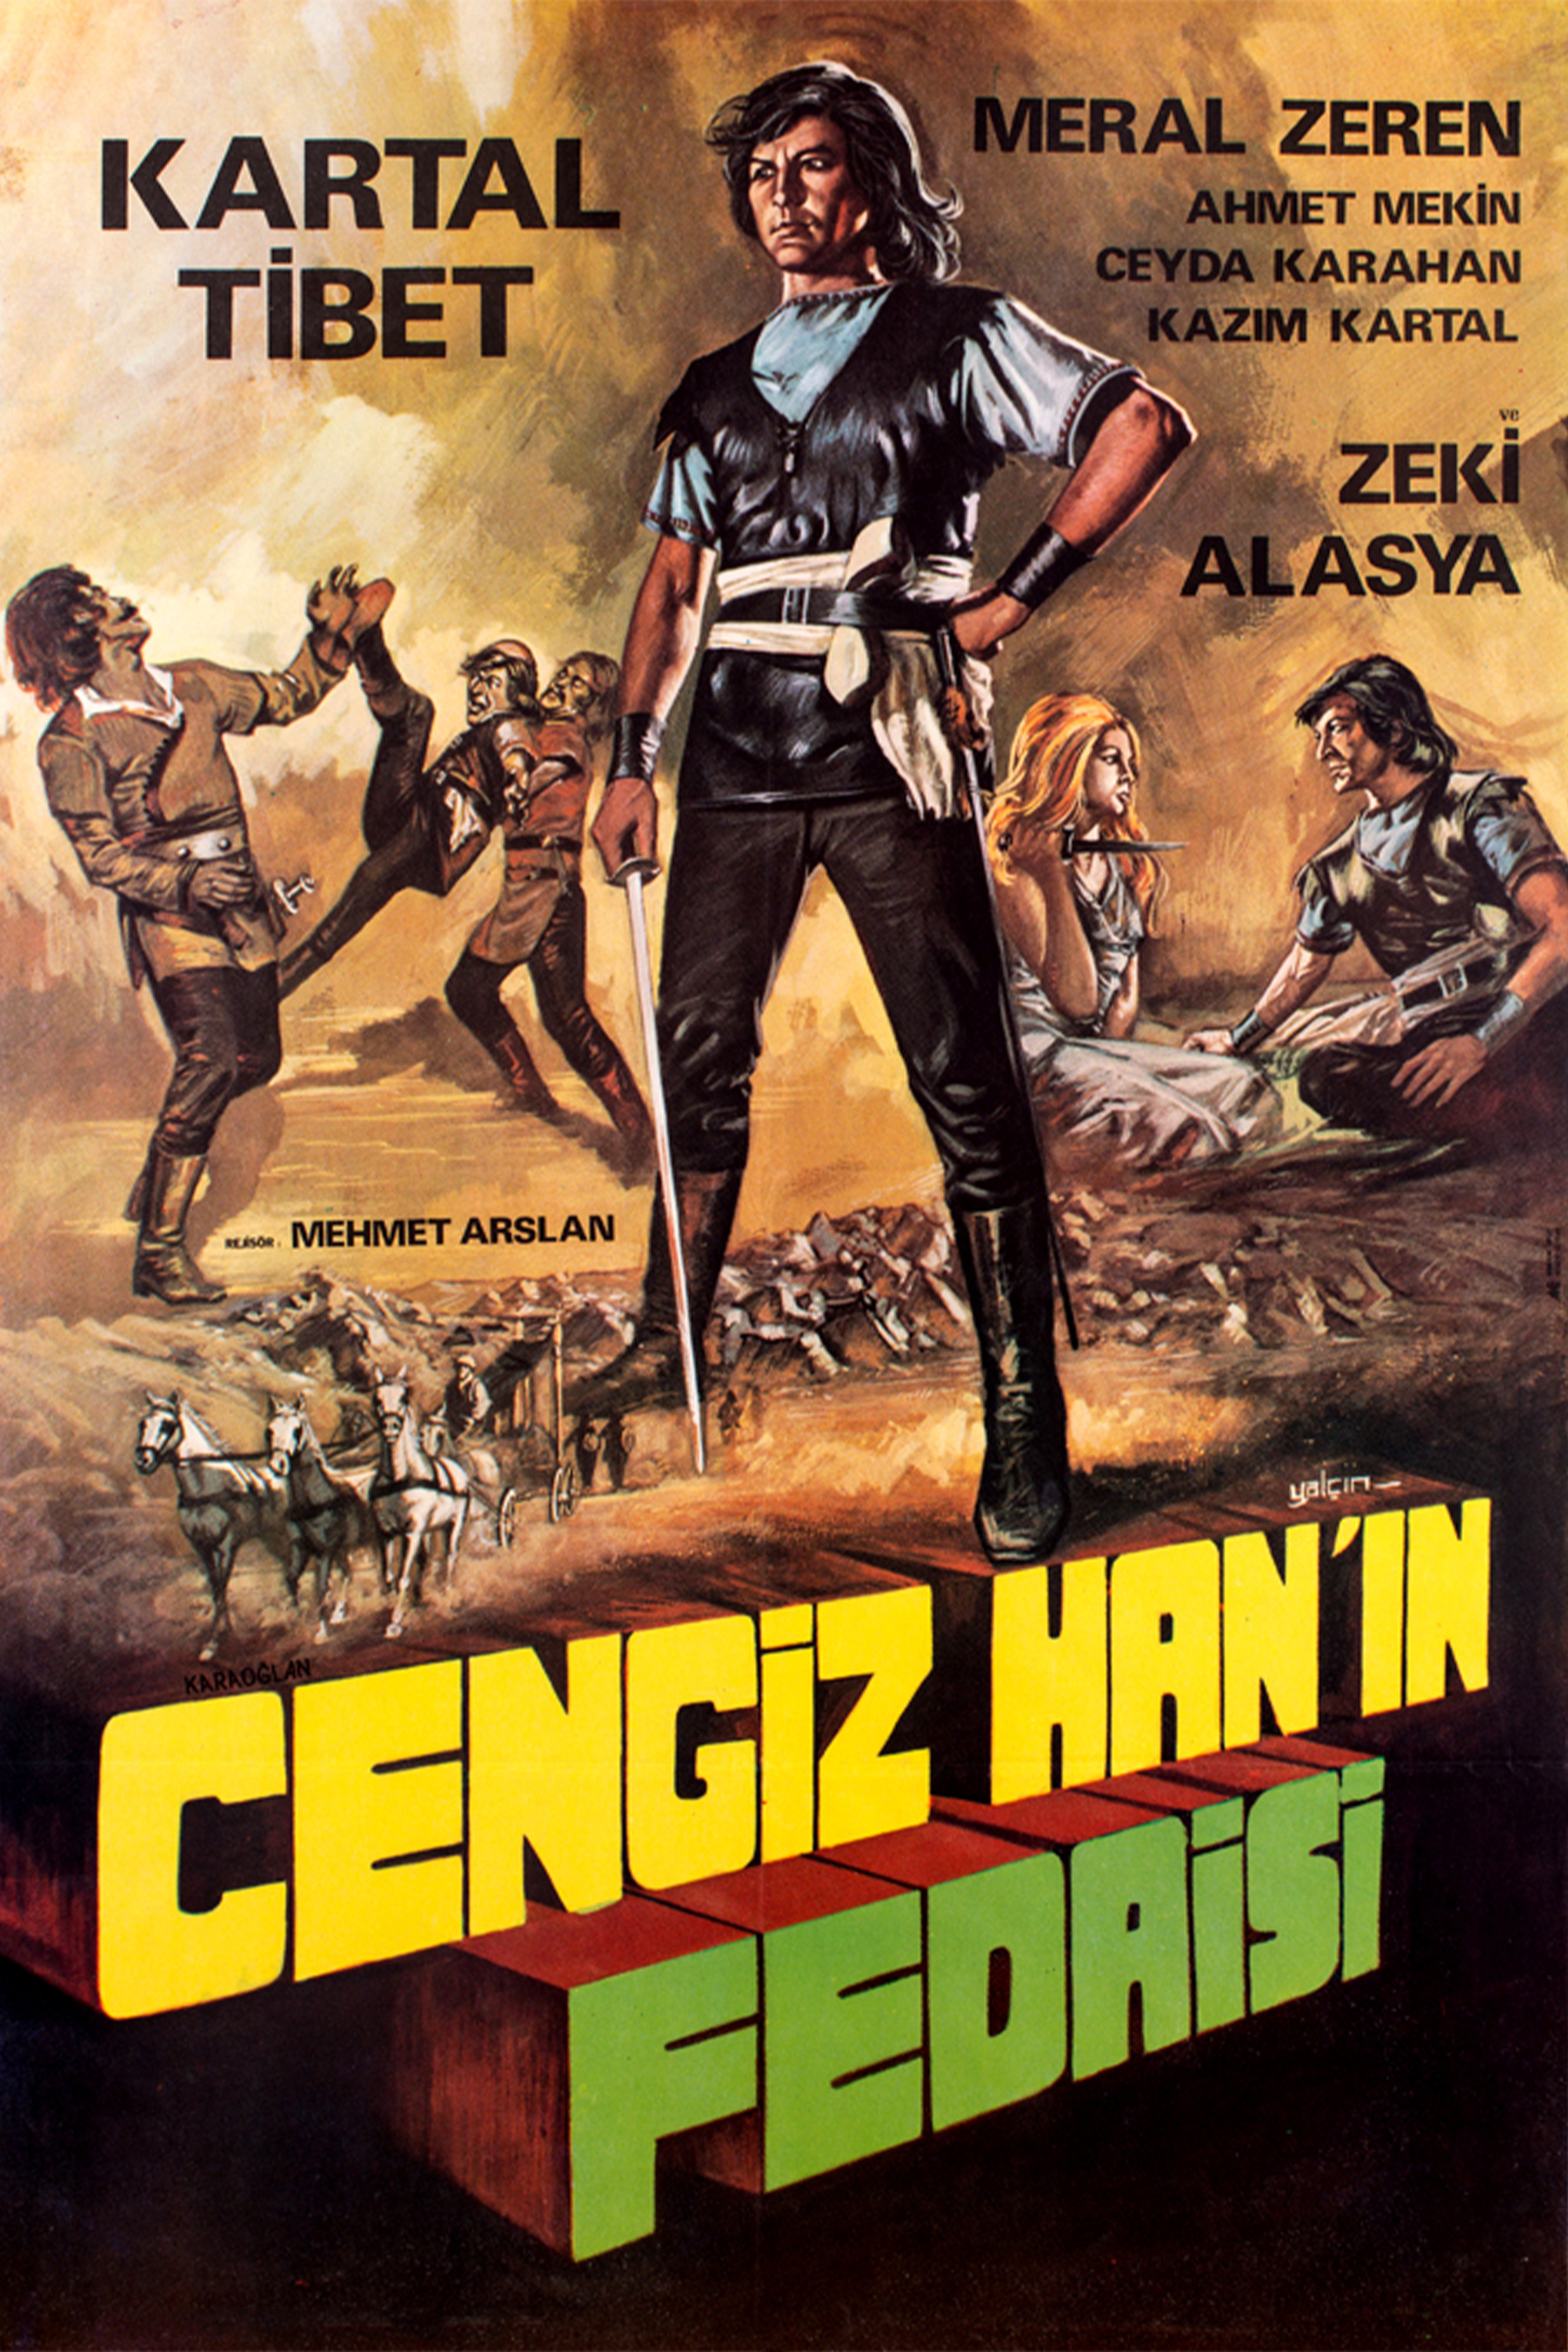 Karaoglan geliyor: Cengiz Han'in hazineleri (1972) Screenshot 5 